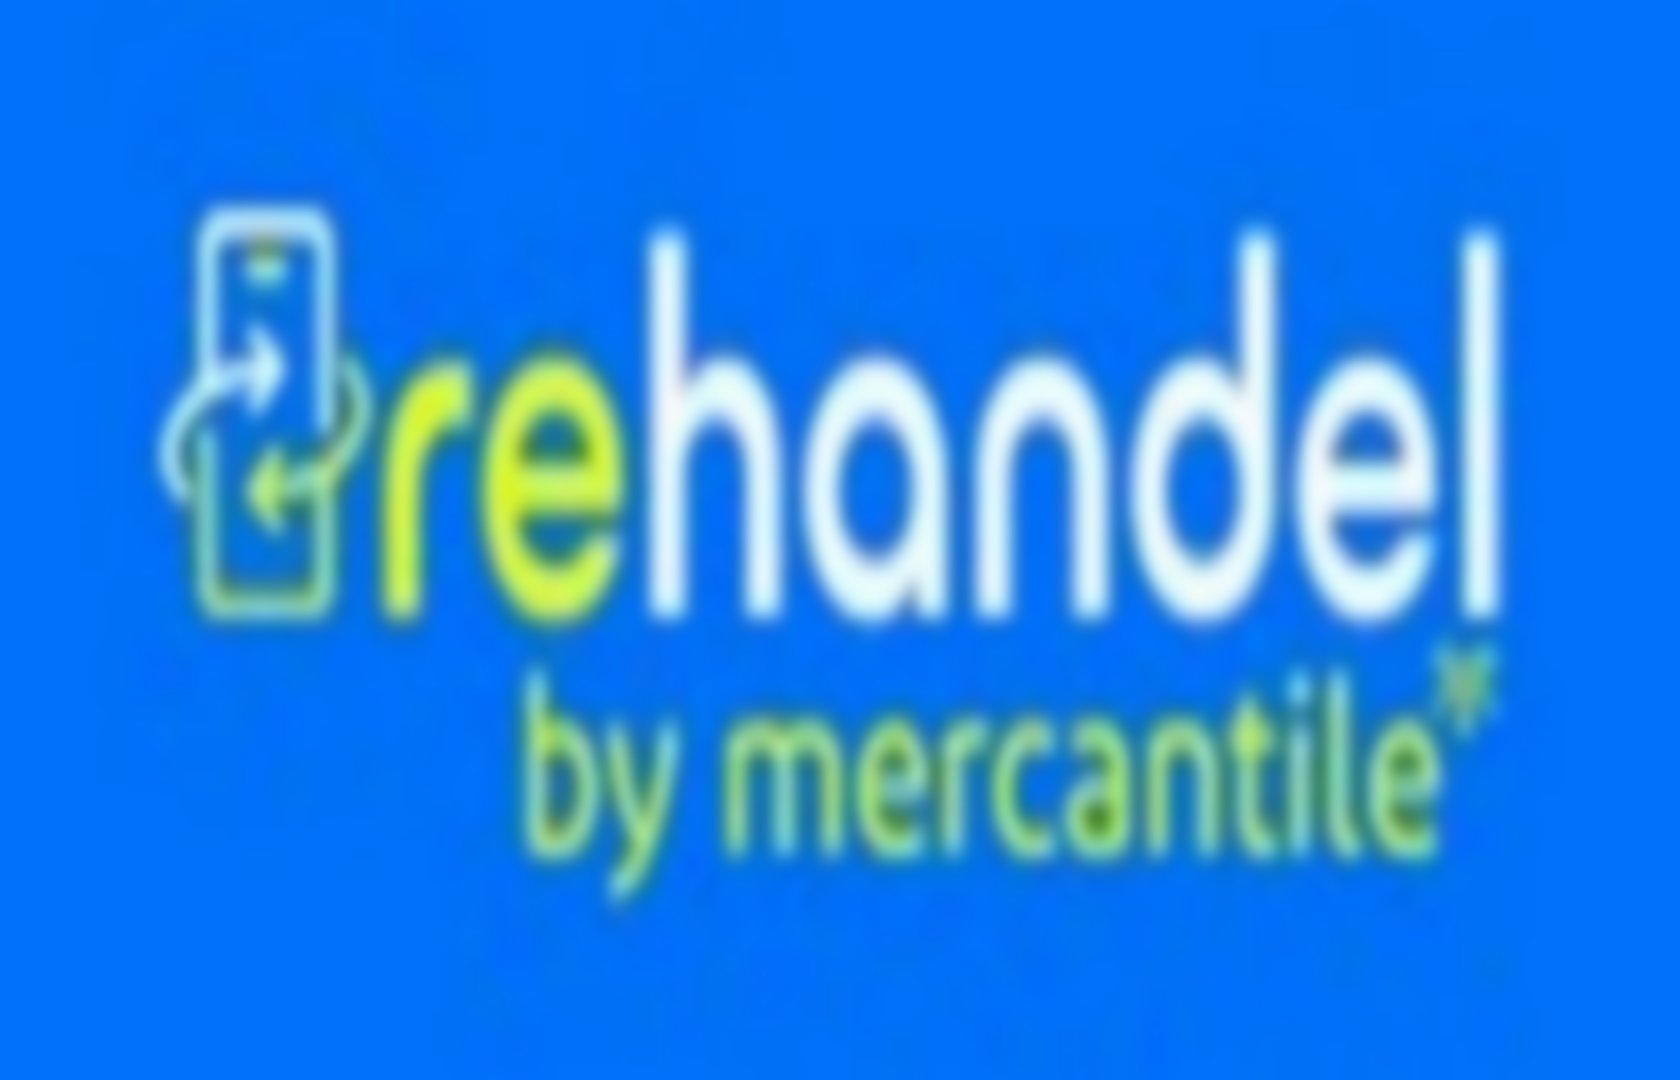 Rehandel Mercantile (rehandelseo) | Pearltrees